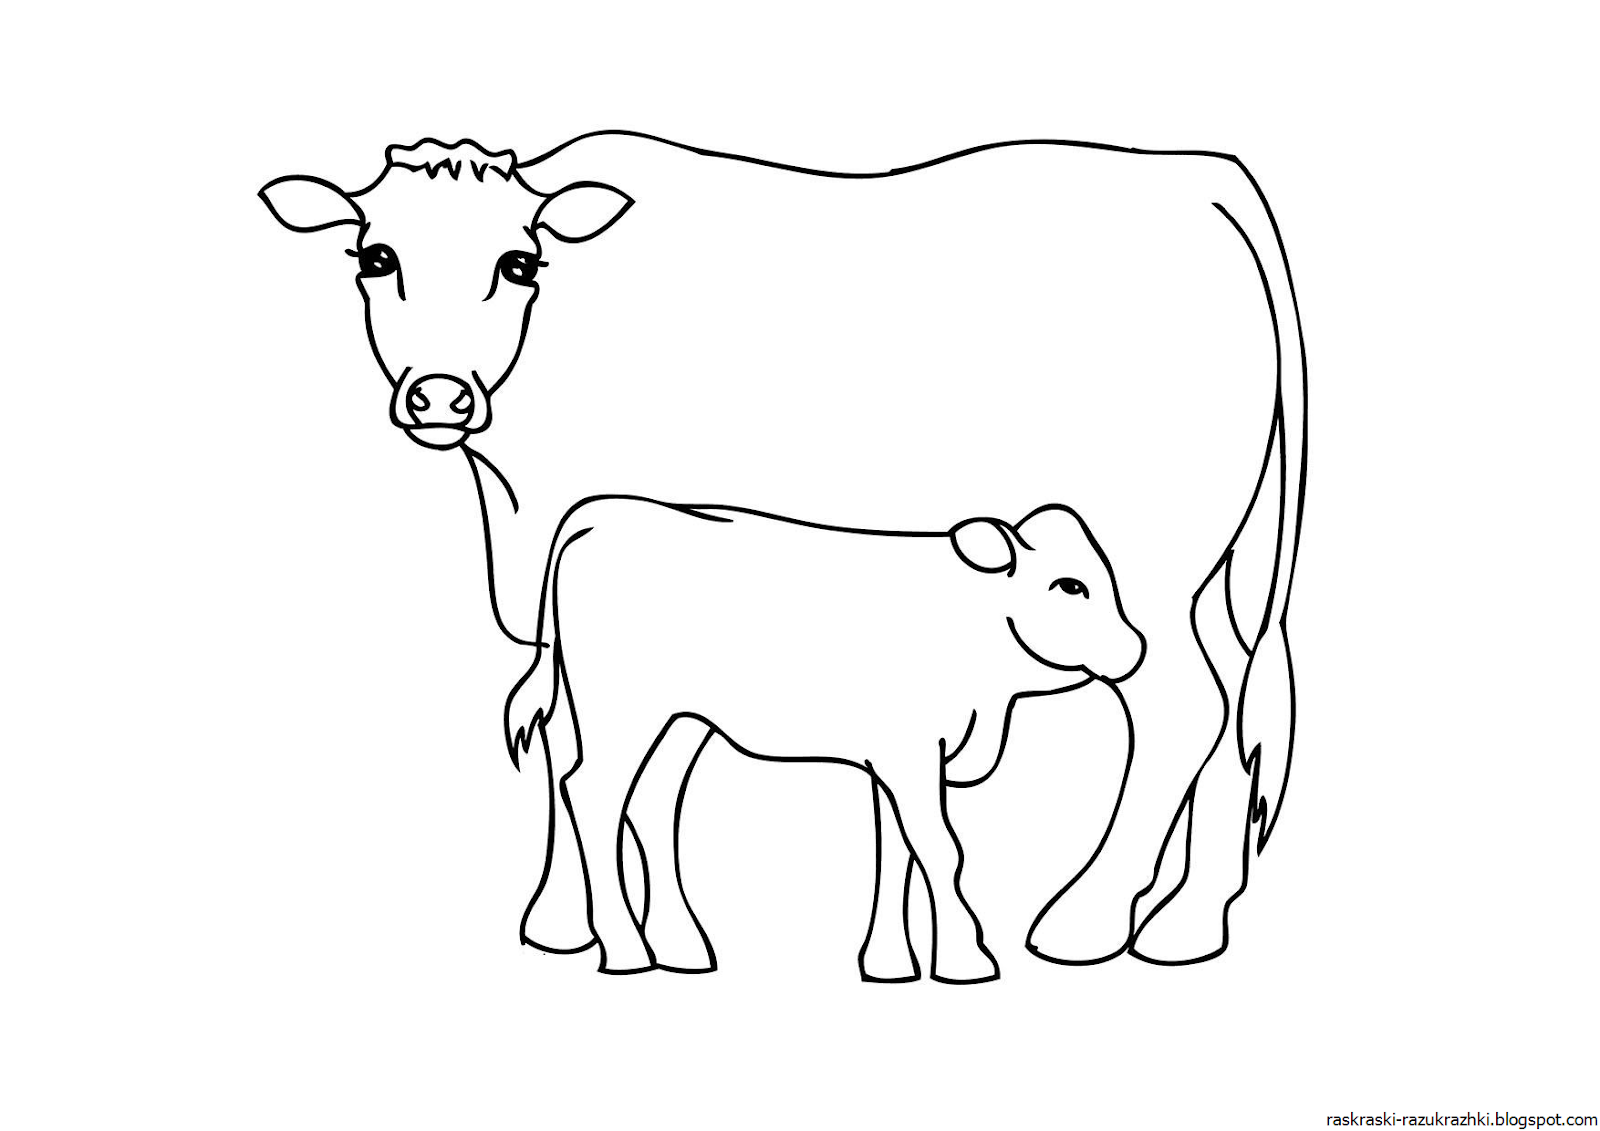 Раскрашивать коров. Раскраска корова. Корова раскраска для детей. Раскраска корова с теленком для детей. Теленок раскраска для детей.